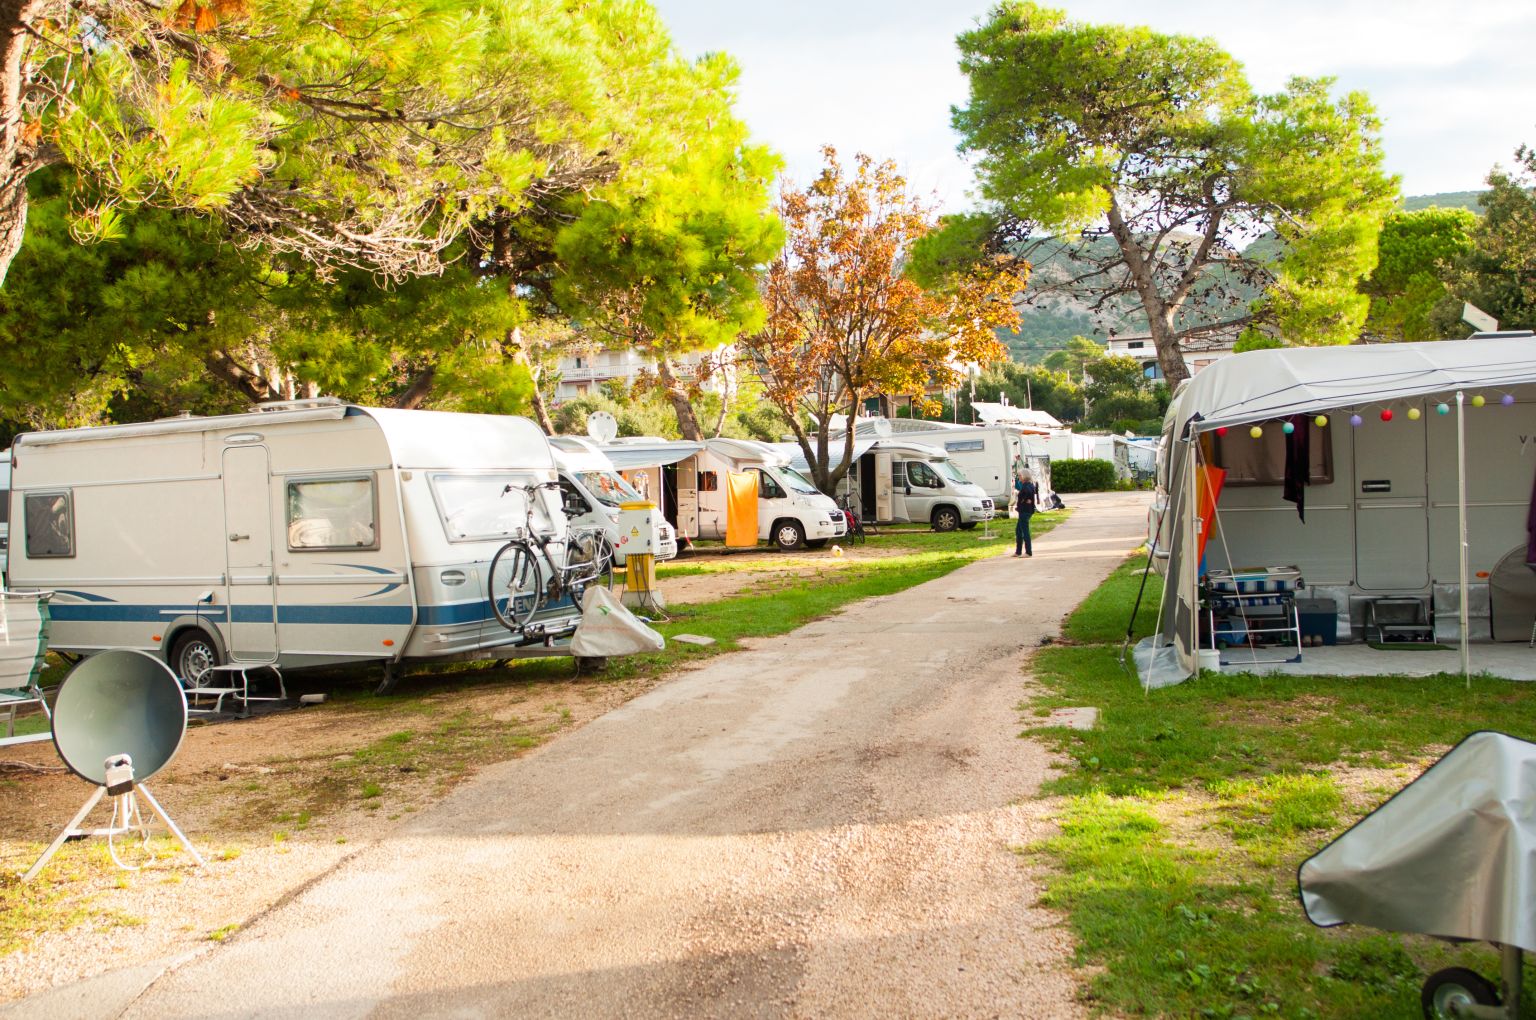 2022: Rekord bei Camping-Übernachtungen in Österreich erzielt